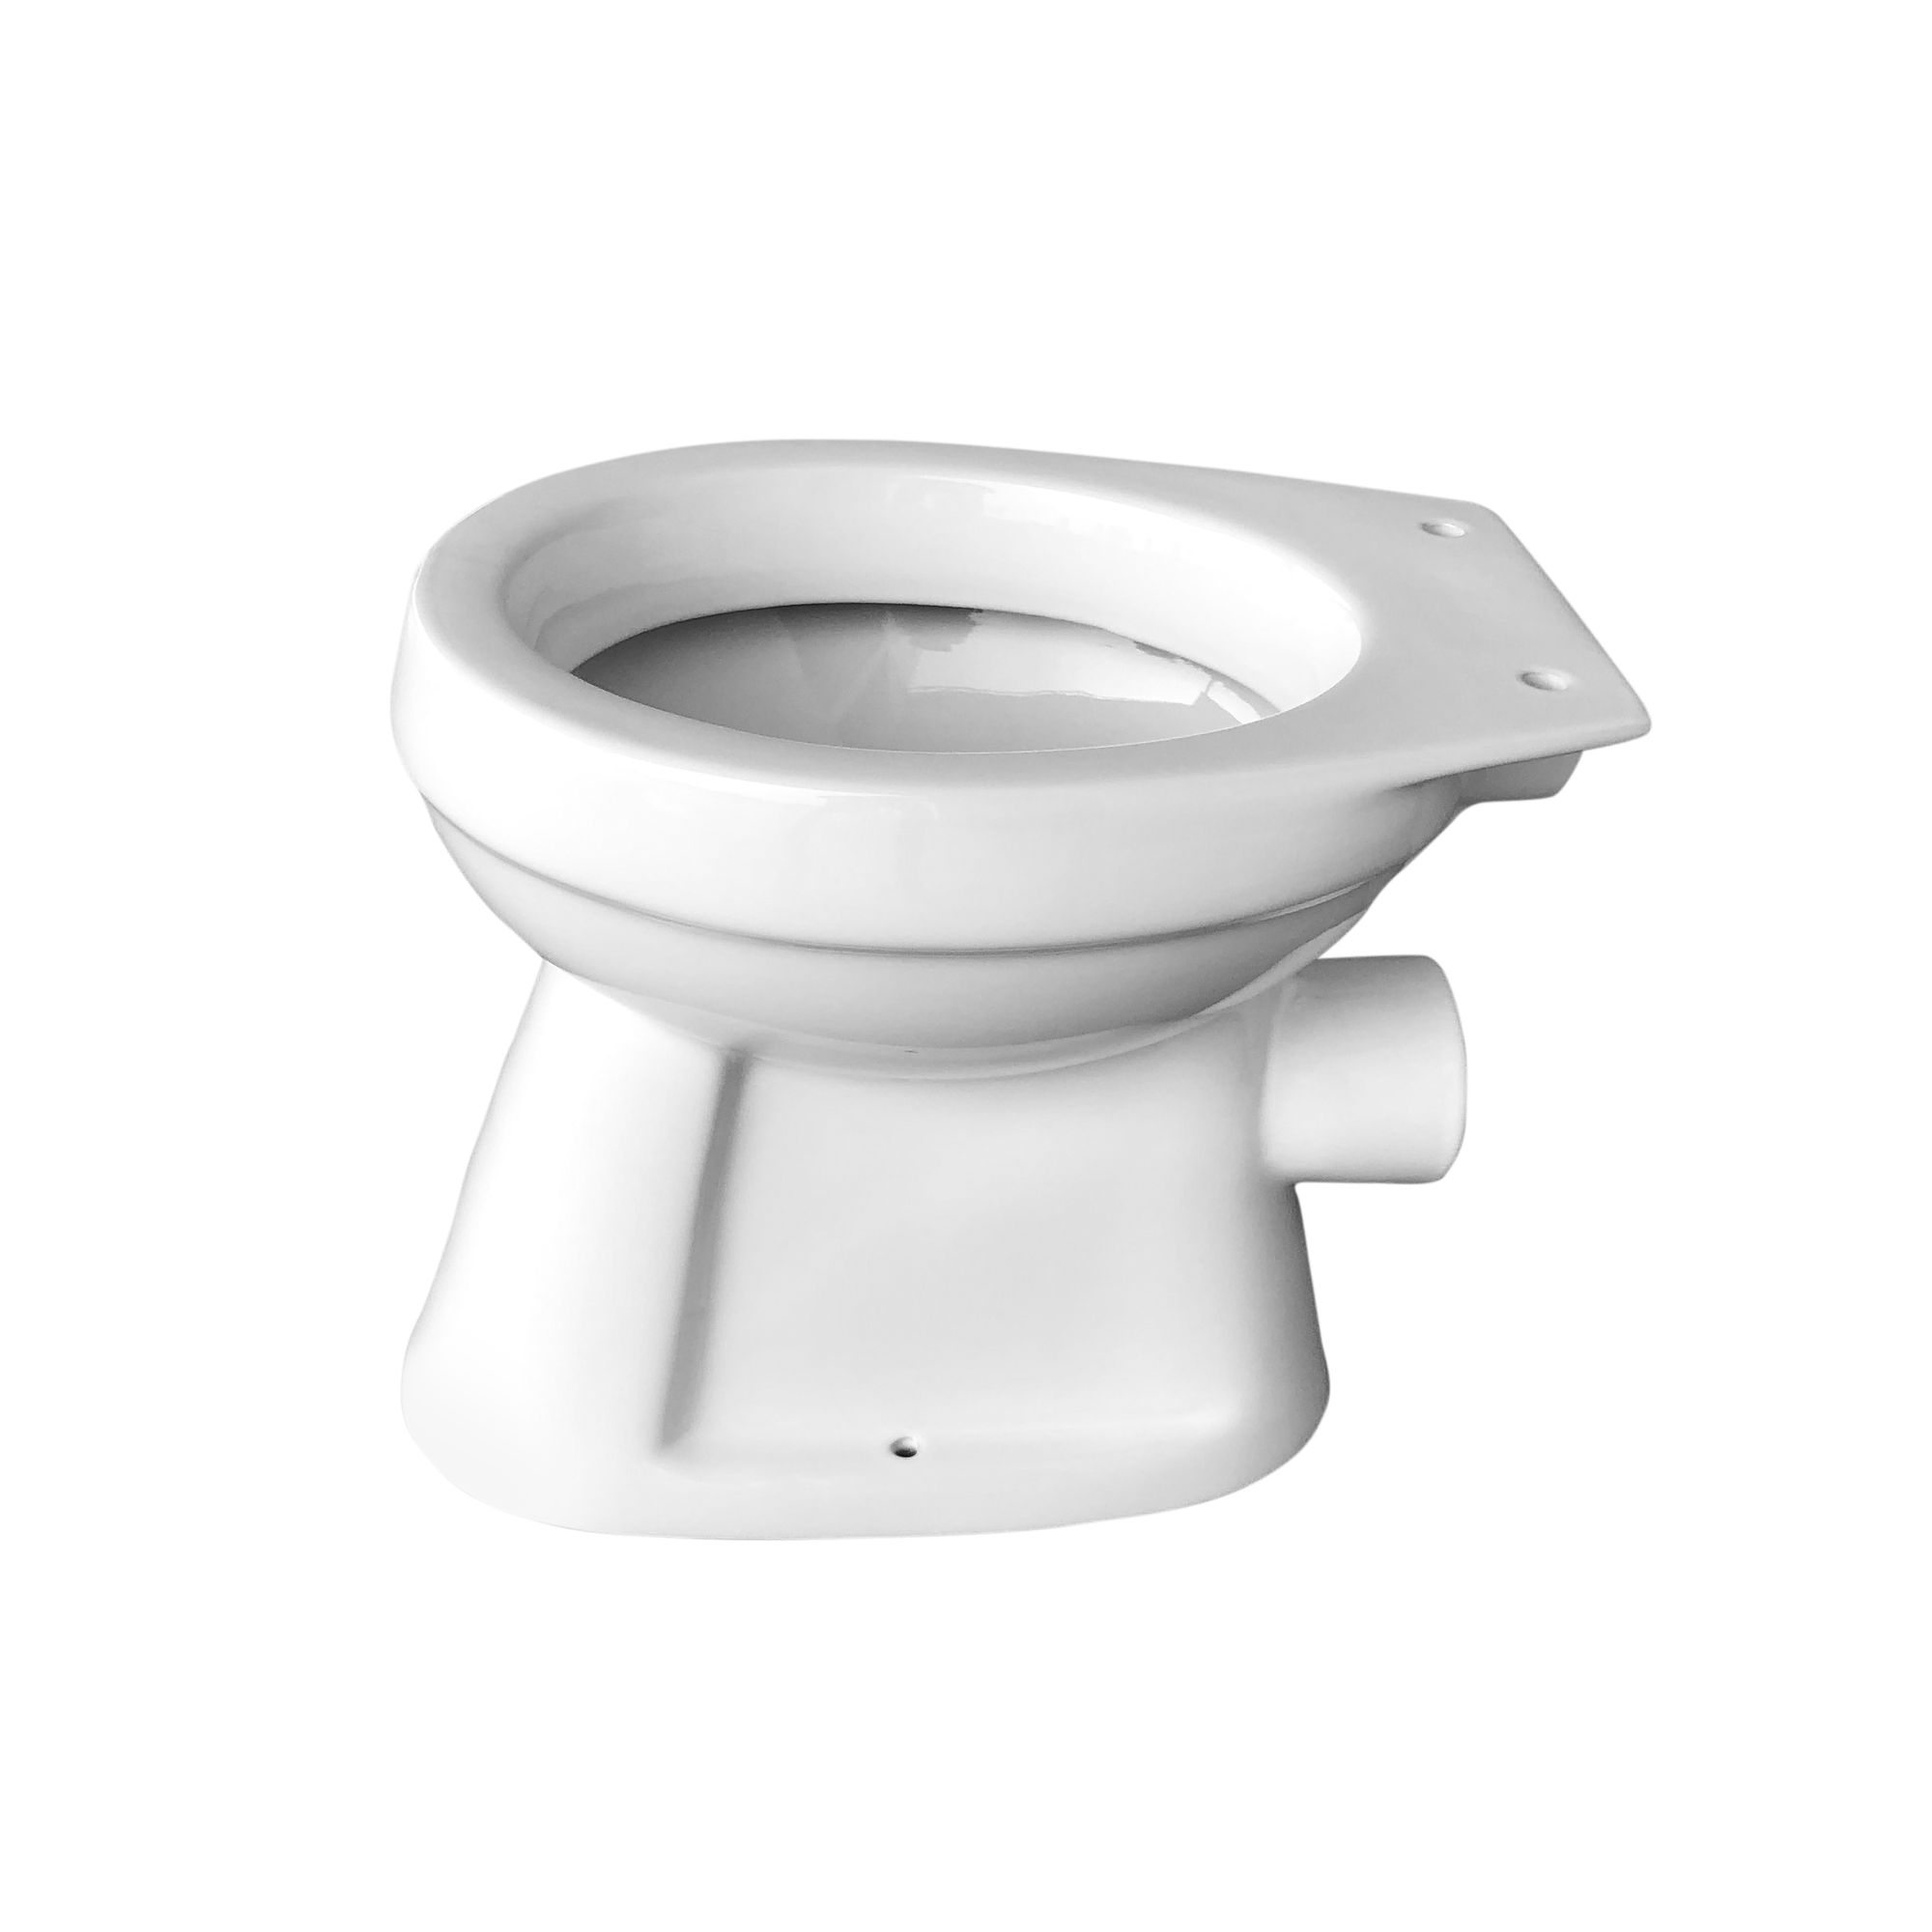 Stand-WC Flachspüler 'DNP' Abgang waagerecht Keramik weiß + product picture